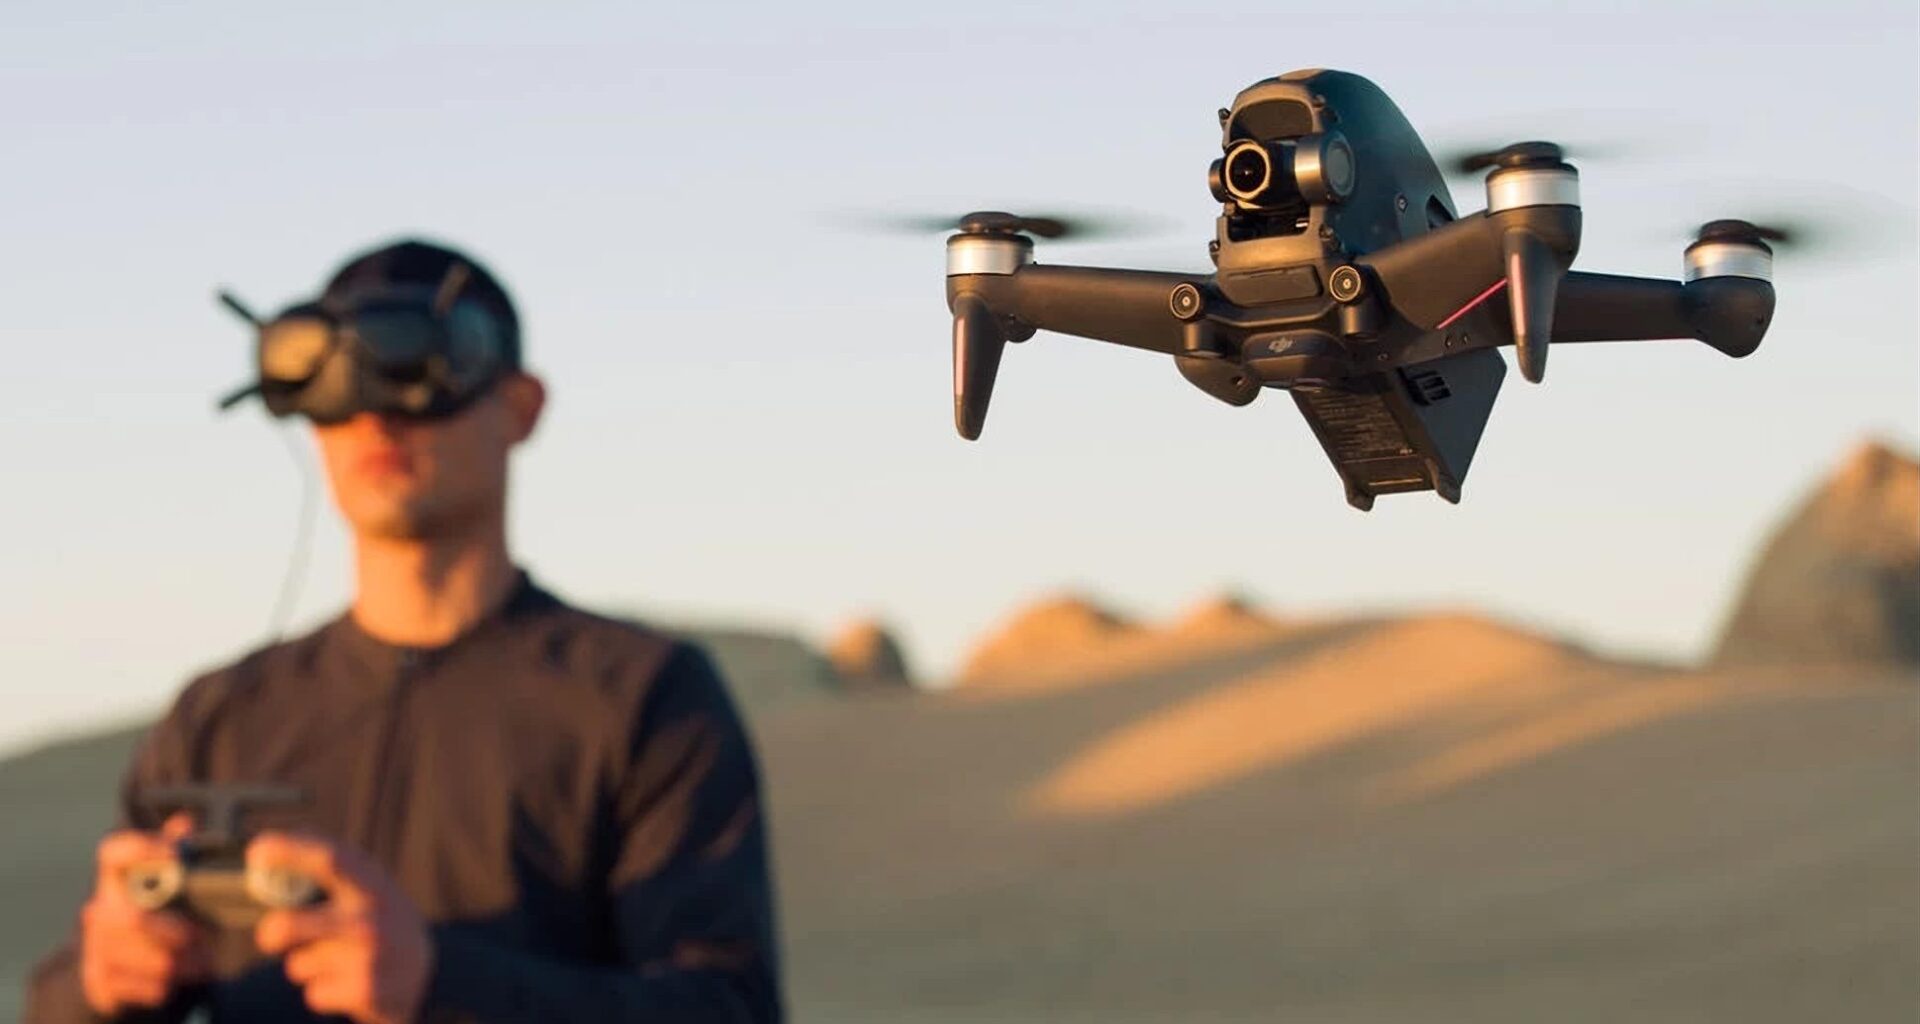 Dji fpv é um drone para usar em primeira pessoa, com óculos especiais. Dji fpv é o mais novo drone da companhia, sendo possível usá-lo em primeira pessoa